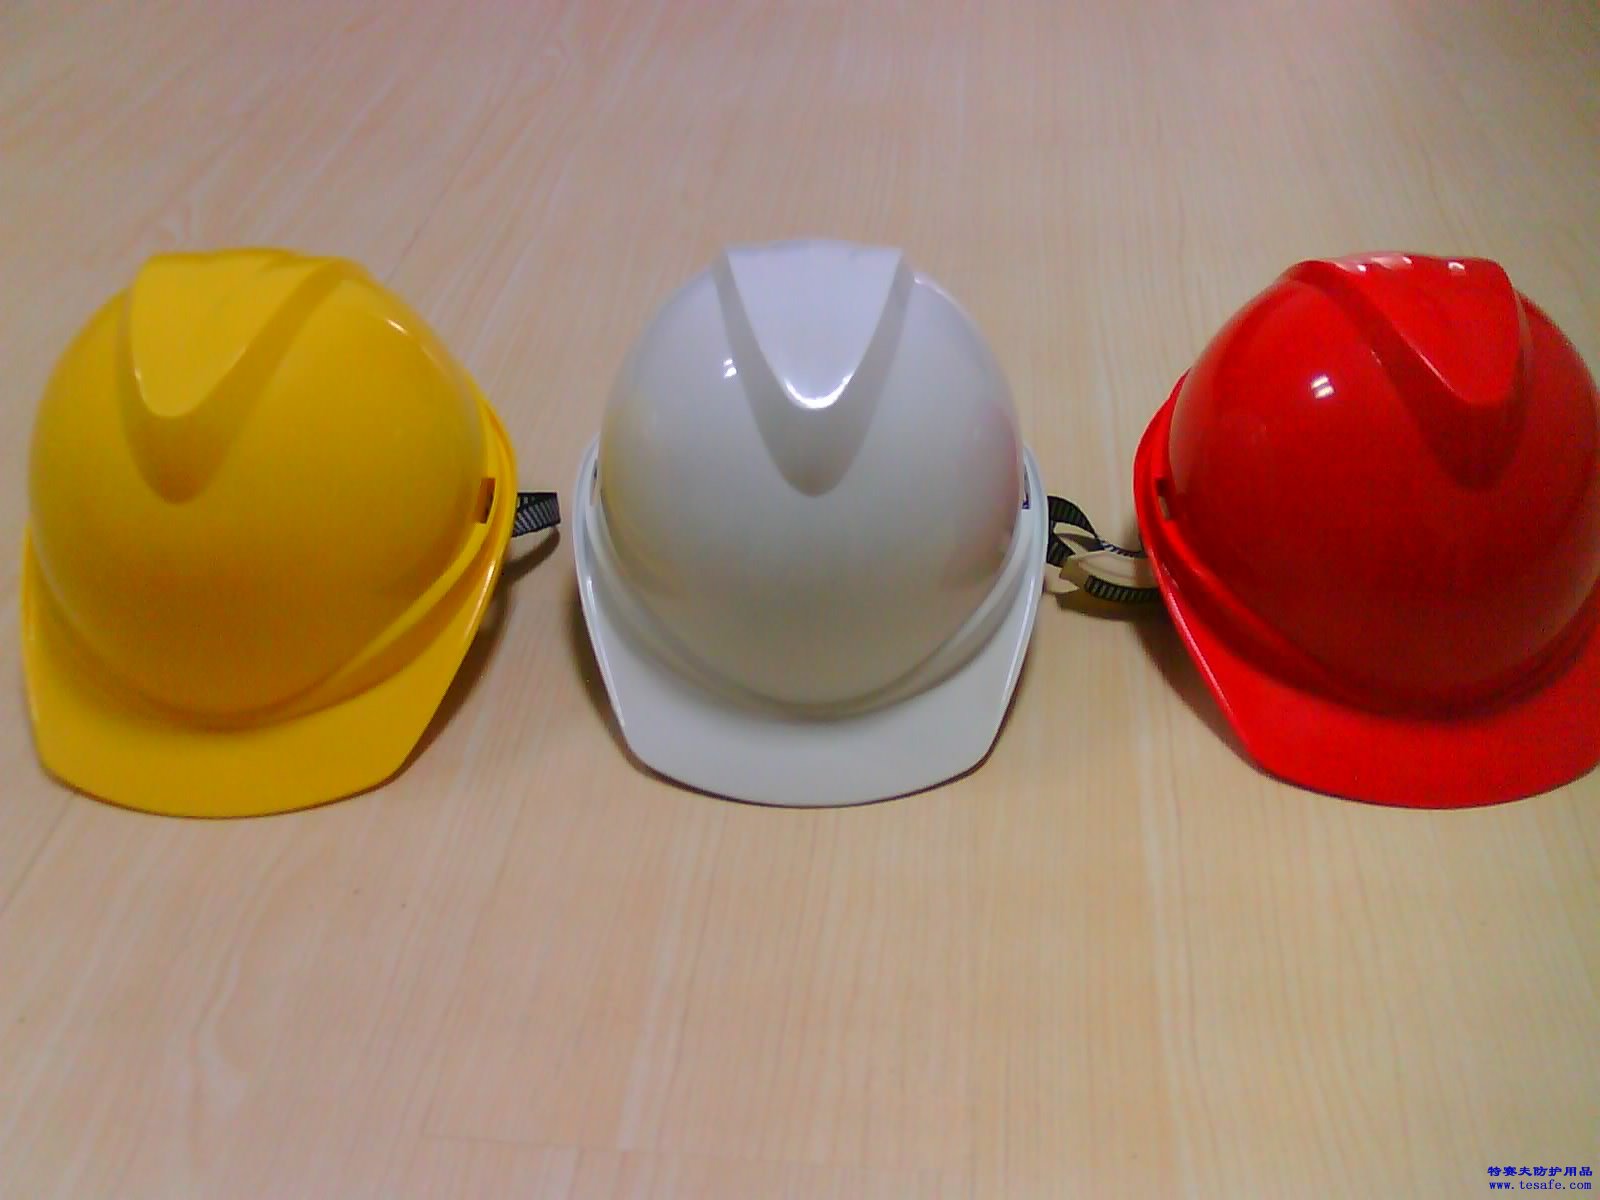 江苏厂家直销V型安全帽ABS安全帽质量保证保检测